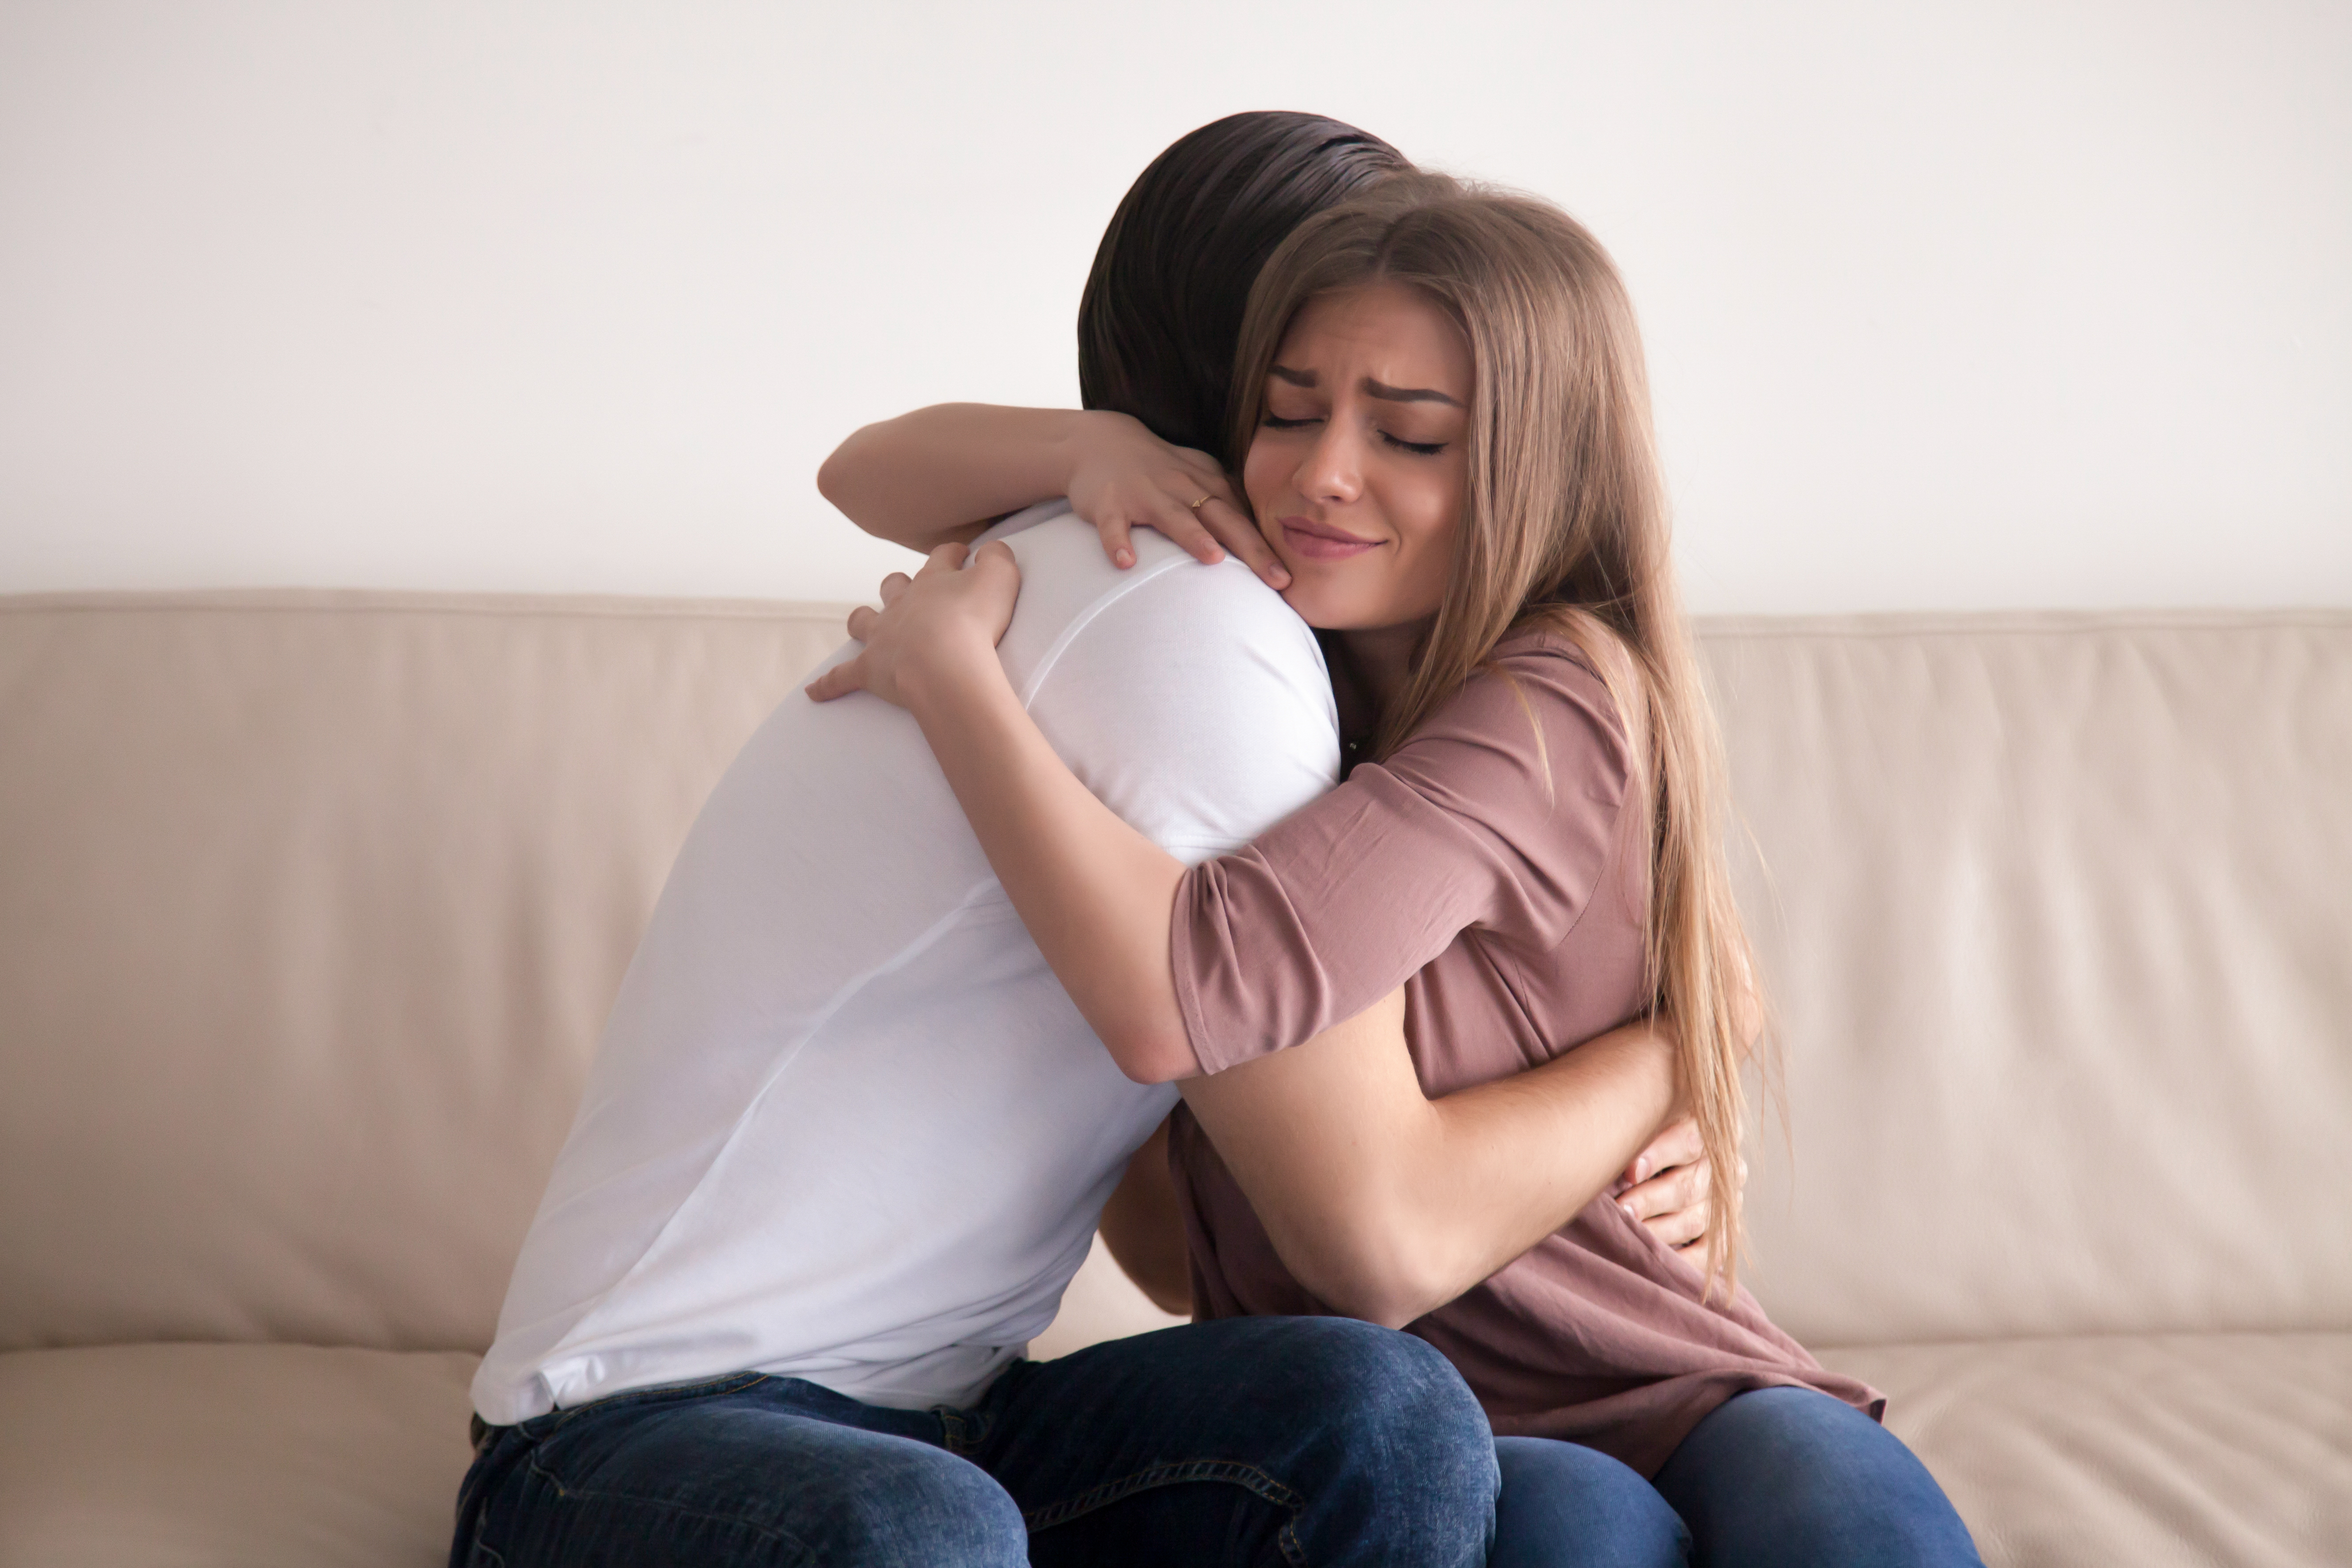 Un hombre abraza a una mujer | Fuente: Shutterstock